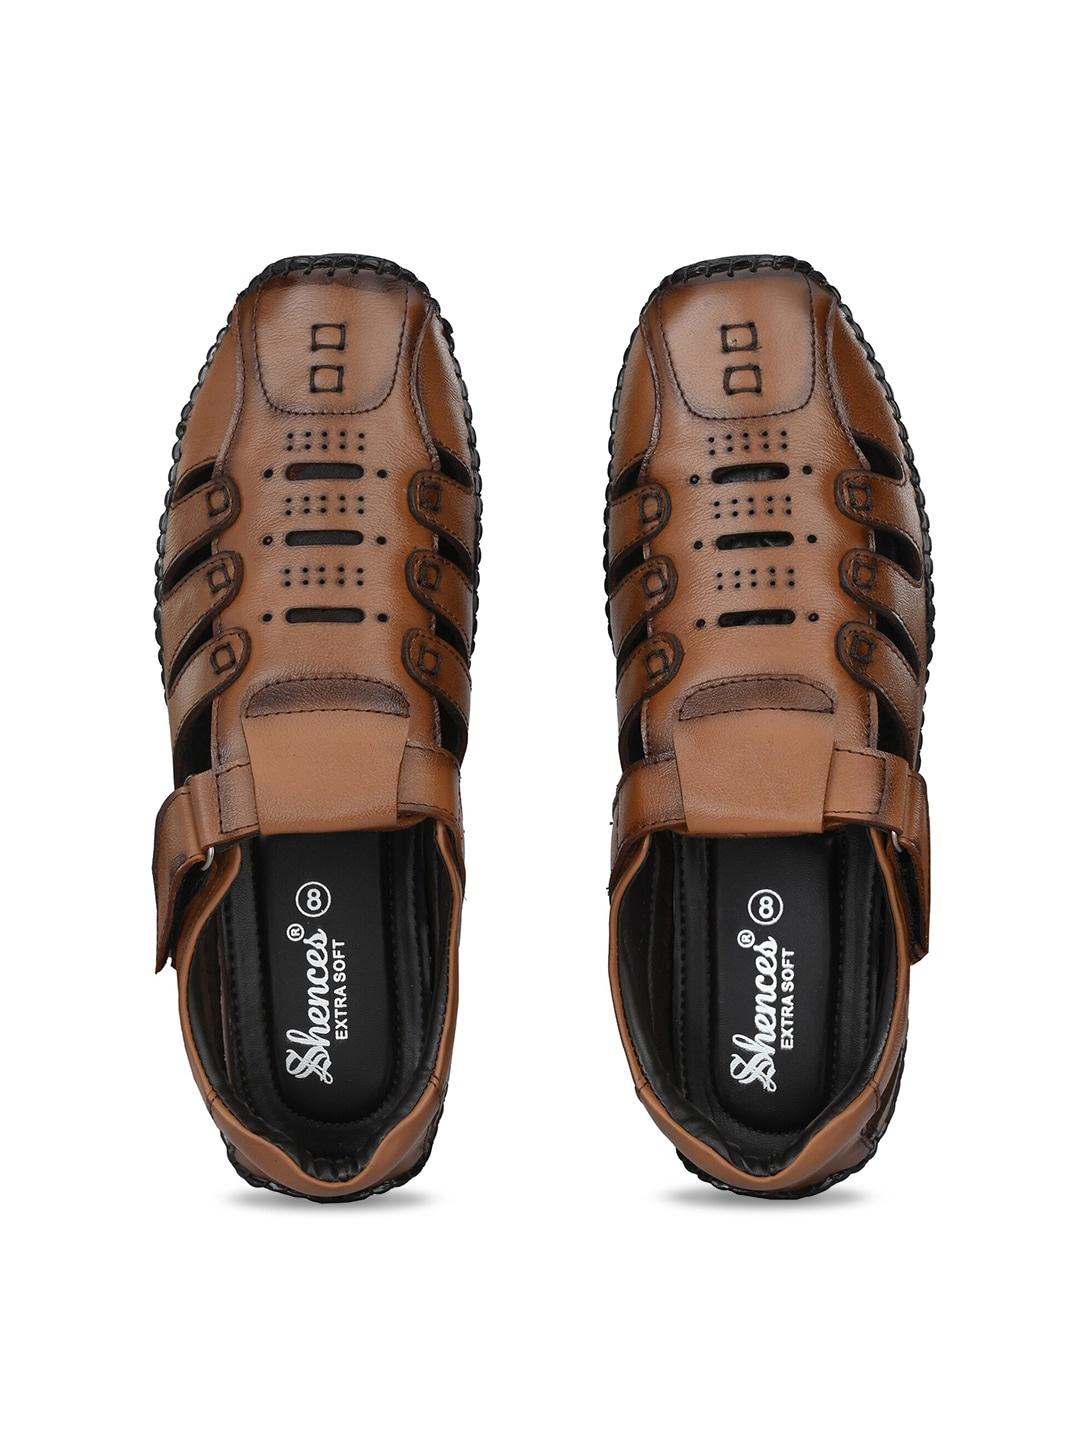 shences-men-leather-shoe-style-sandals